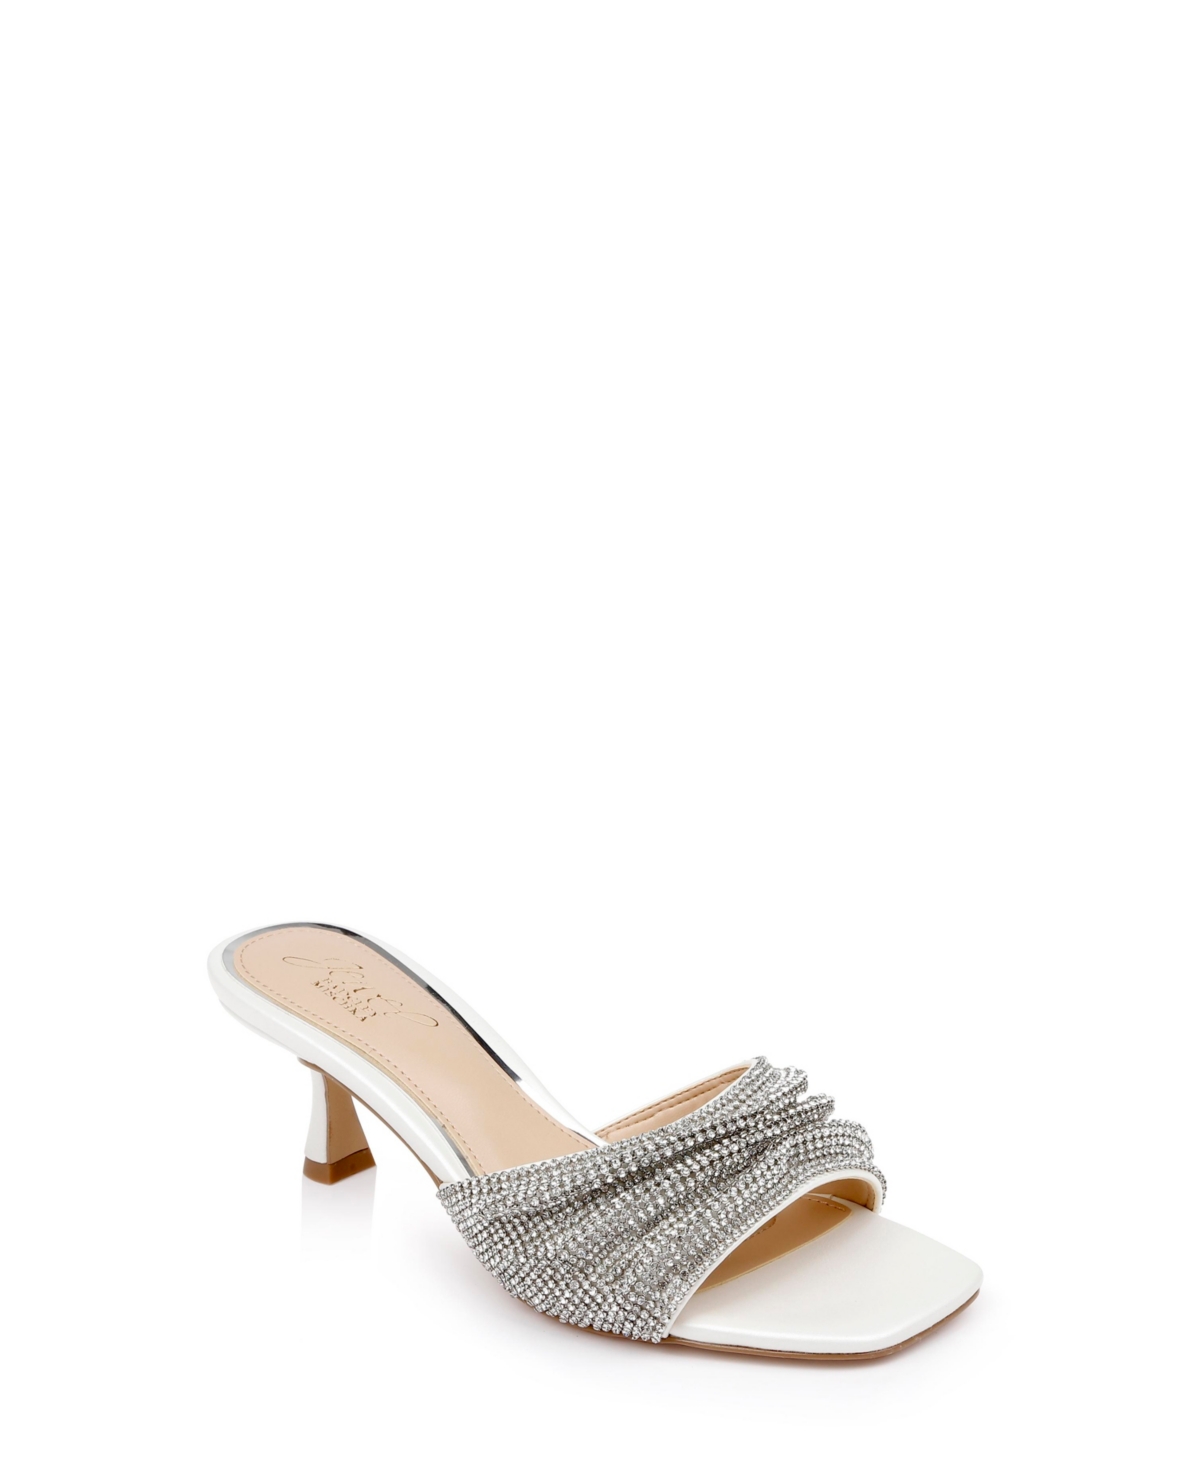 Shop Jewel Badgley Mischka Women's Humor Kitten Heel Slide Evening Sandals In White Pearlized